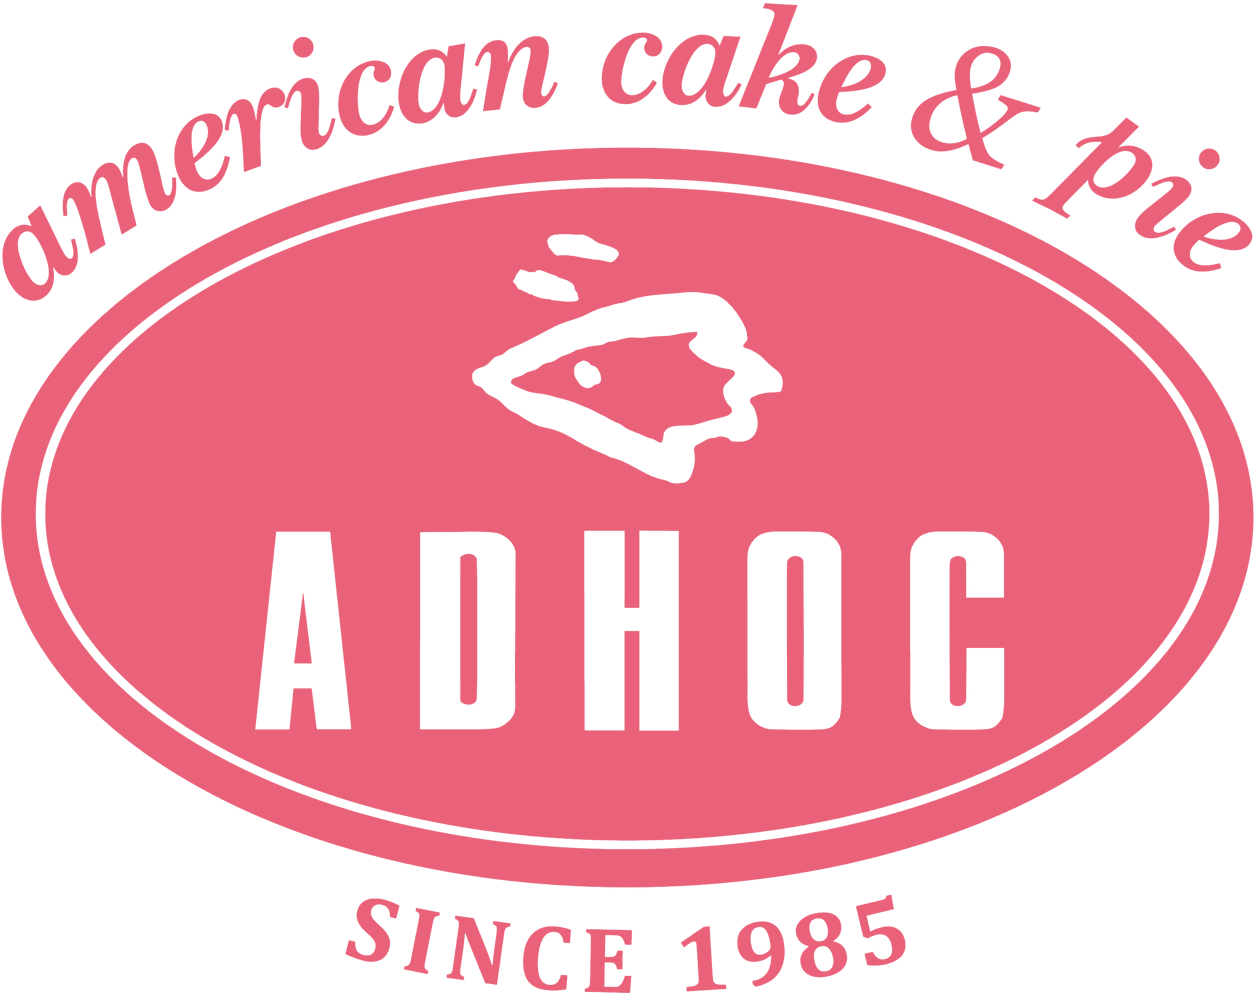 Food＆Beverage ADHOC